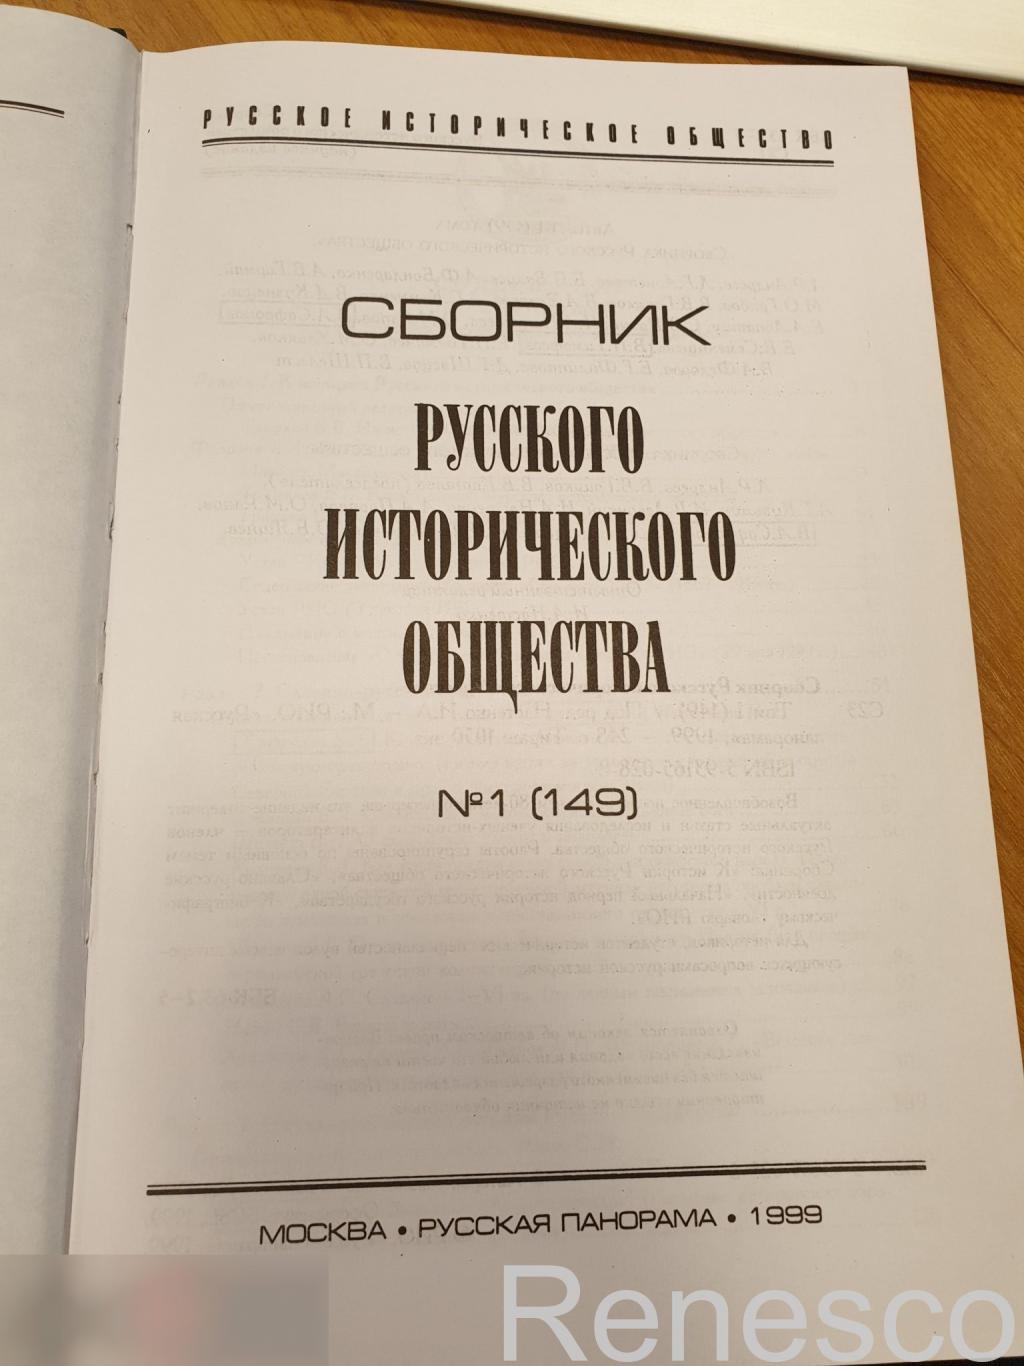 Сборник Русского исторического общества. Том 1 (149) 1999 год 3